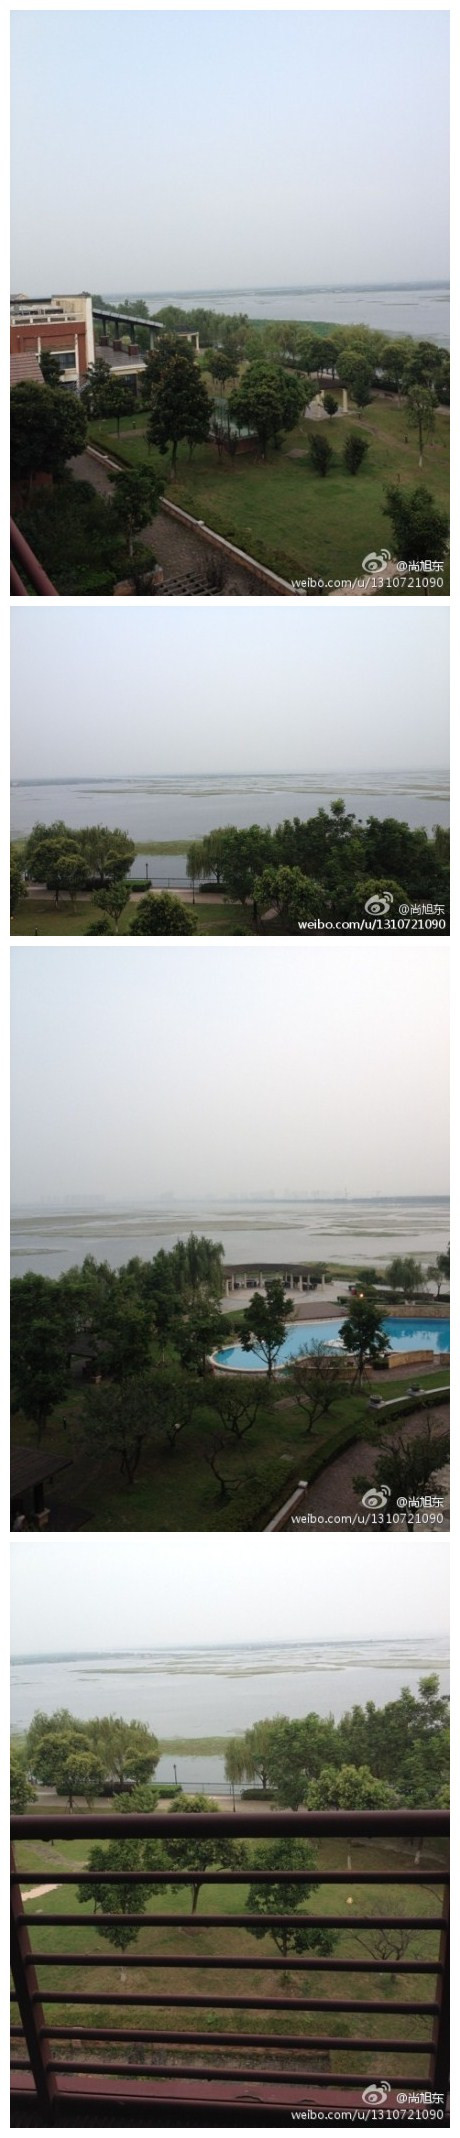 刚到达阳澄湖半岛酒店，䧃台正对着著名的大闸蟹产地阳澄湖